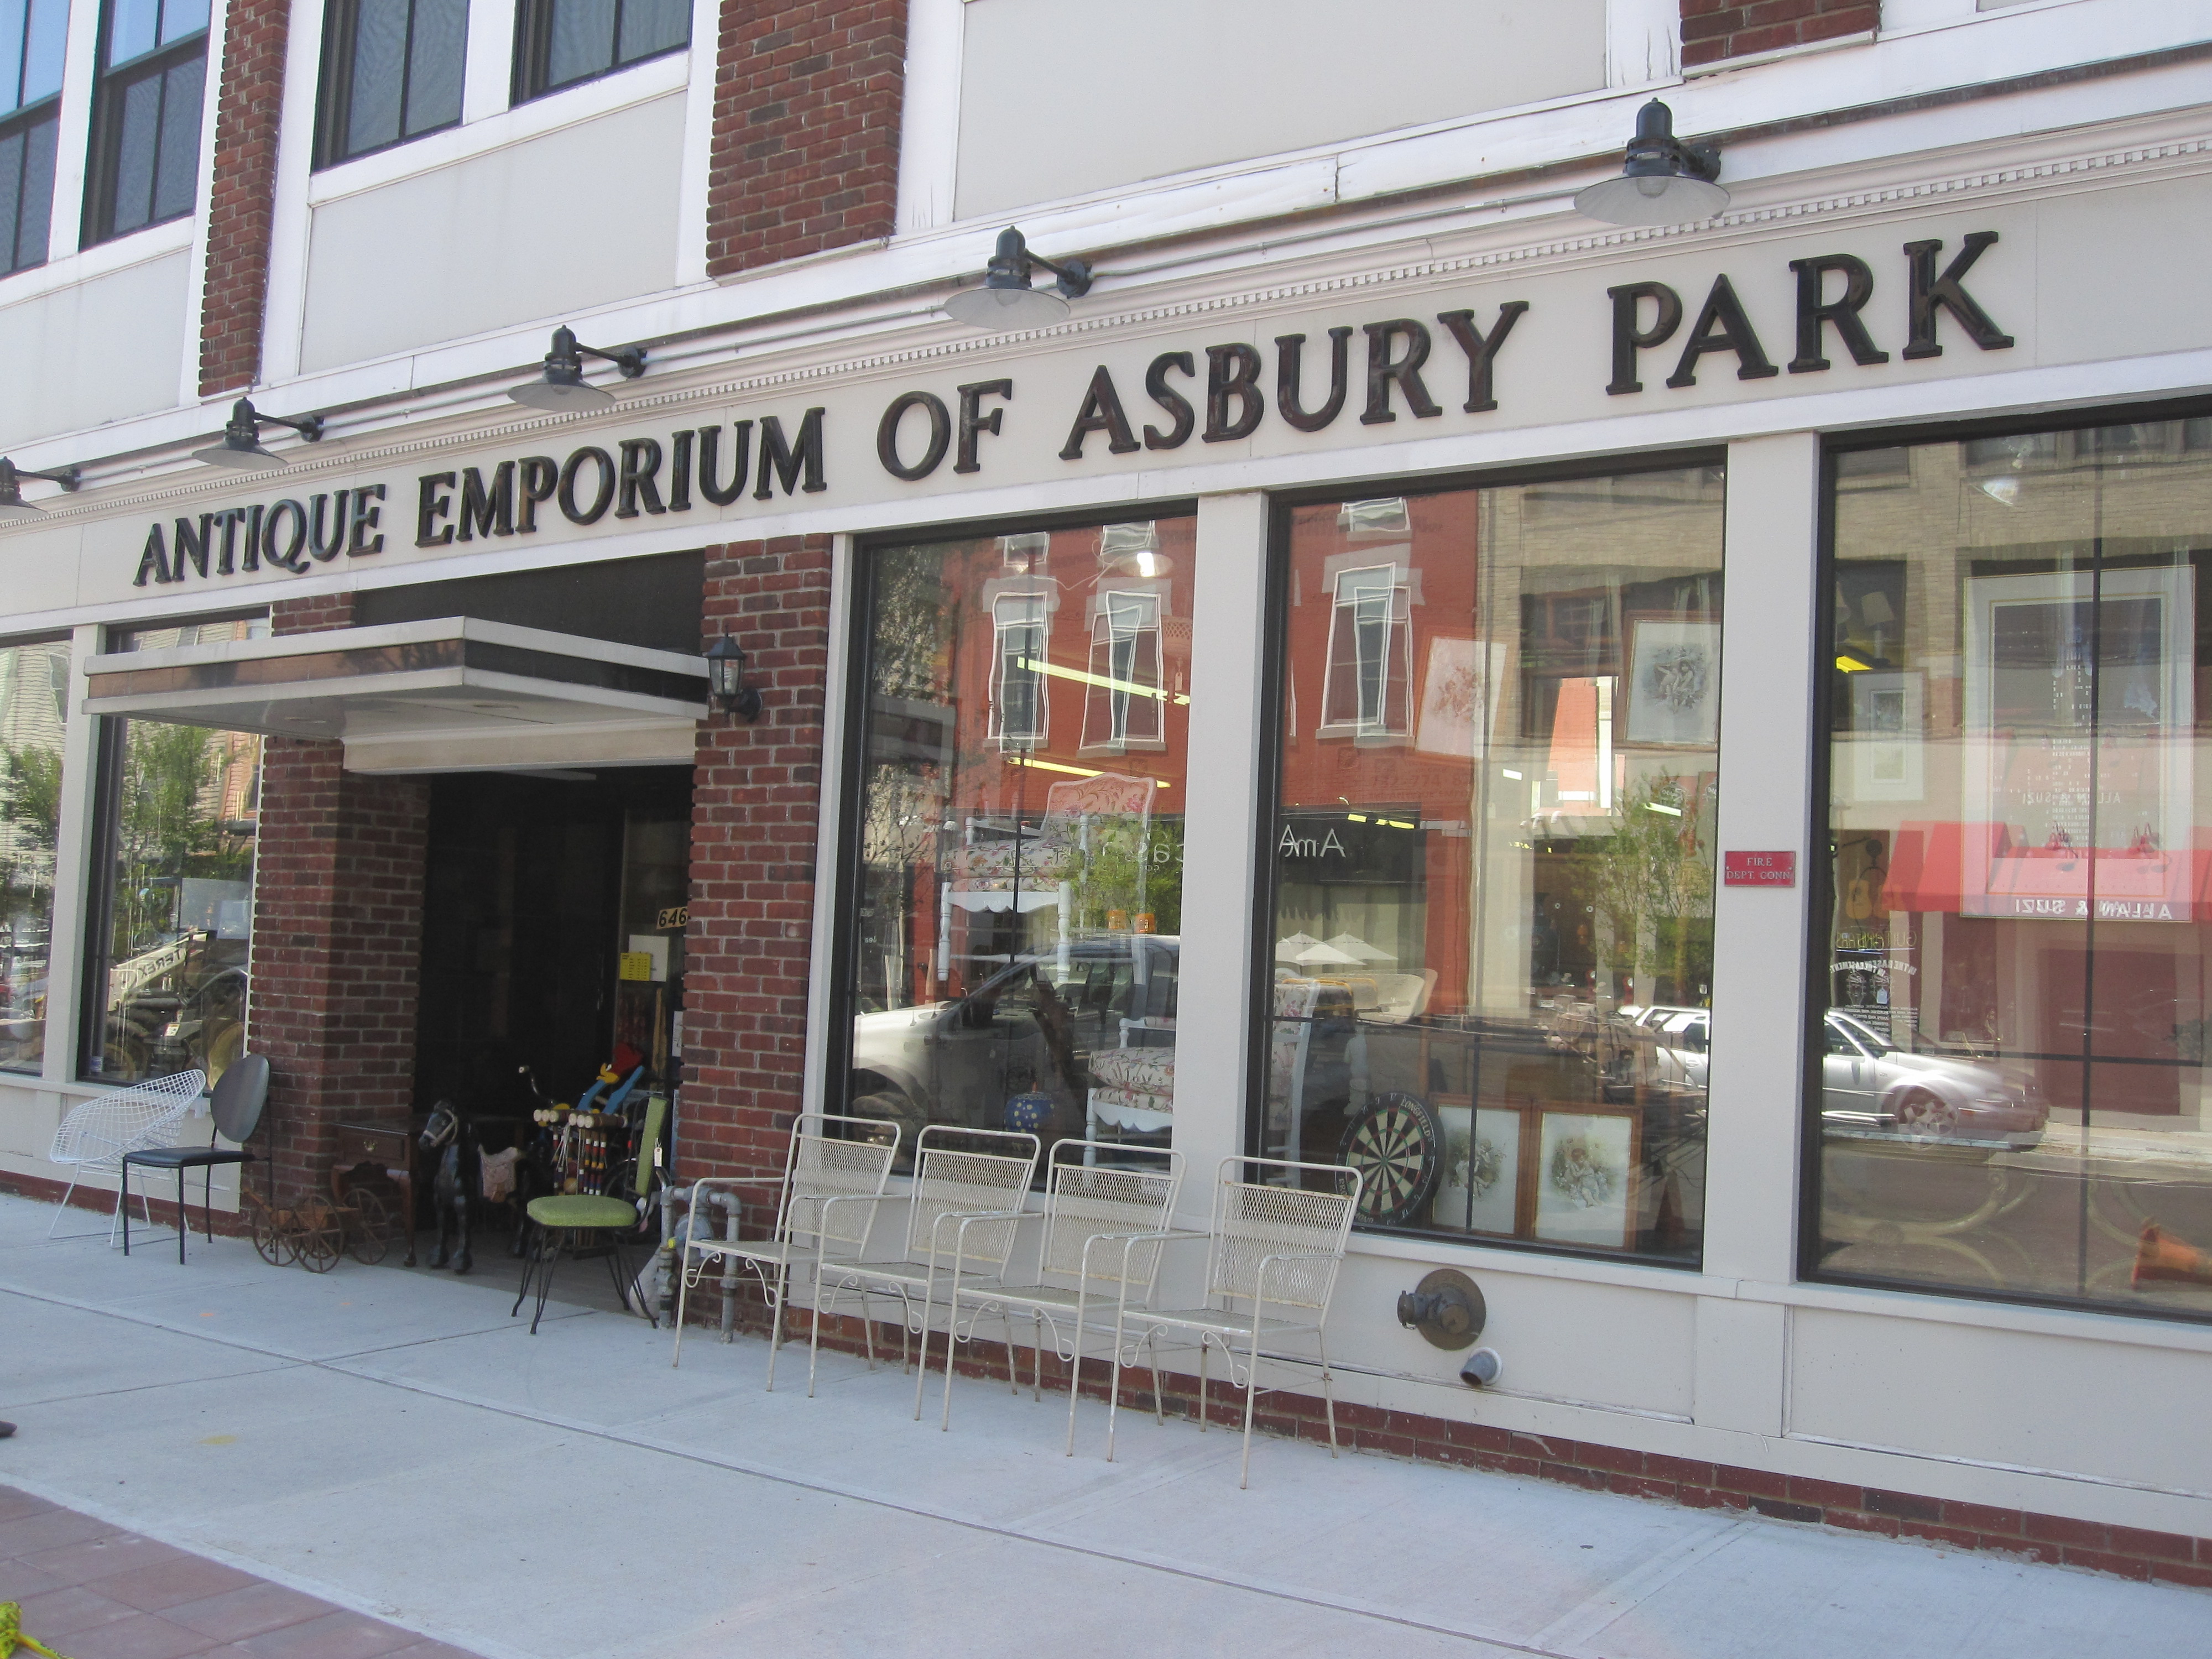 Antique Emporium of Asbury Park